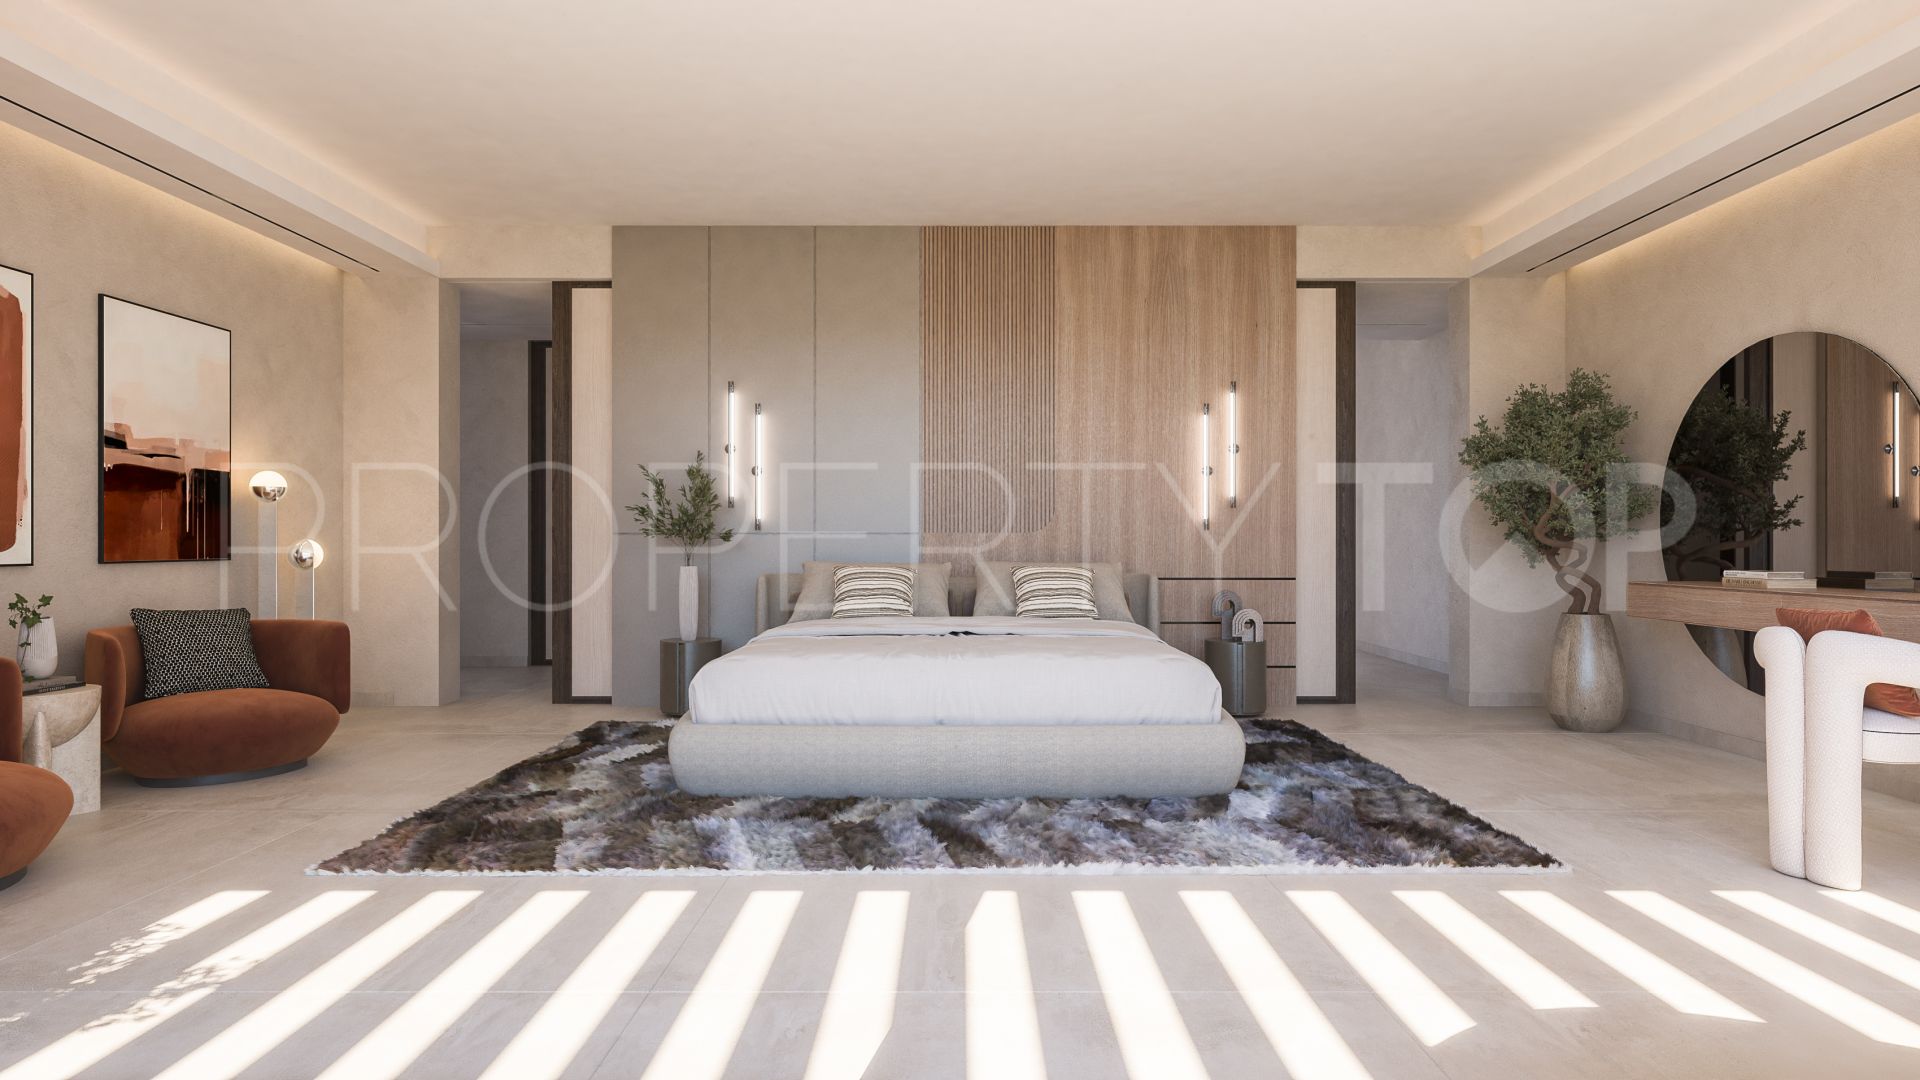 7 bedrooms villa in Paraiso Alto for sale